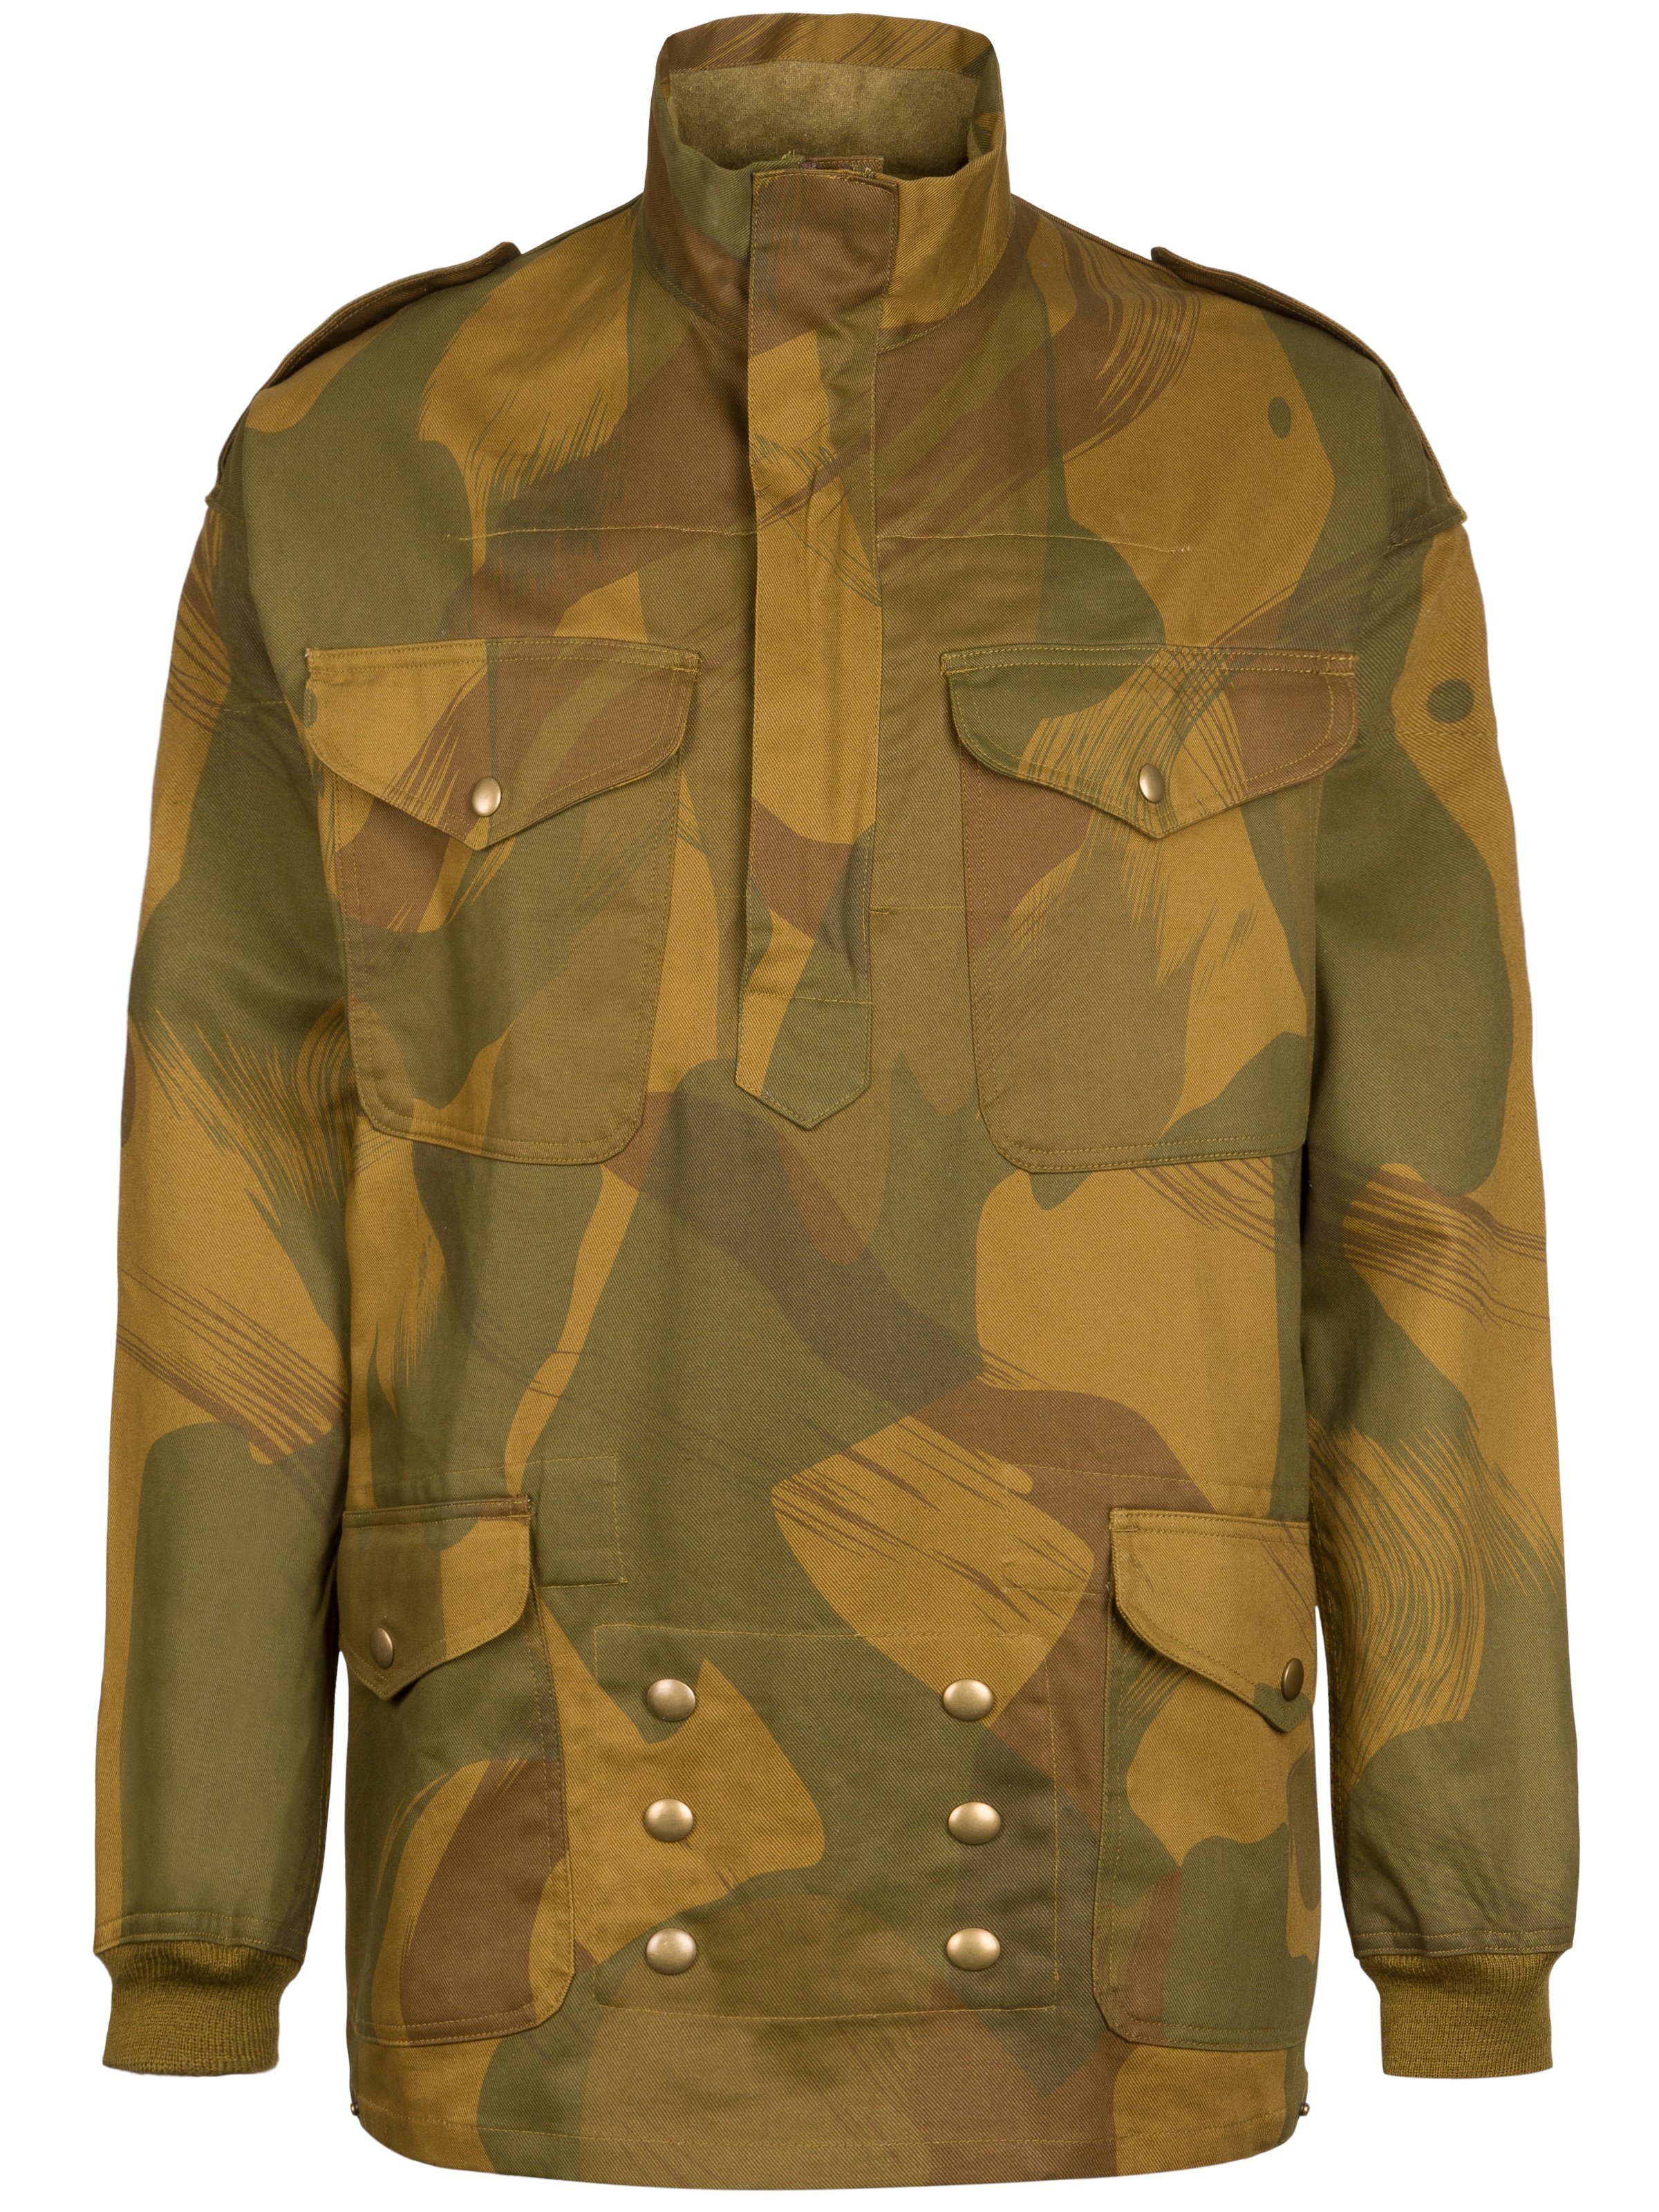 Denison Smock camouflage jacket - repro 2 129,75 € | Nestof.pl